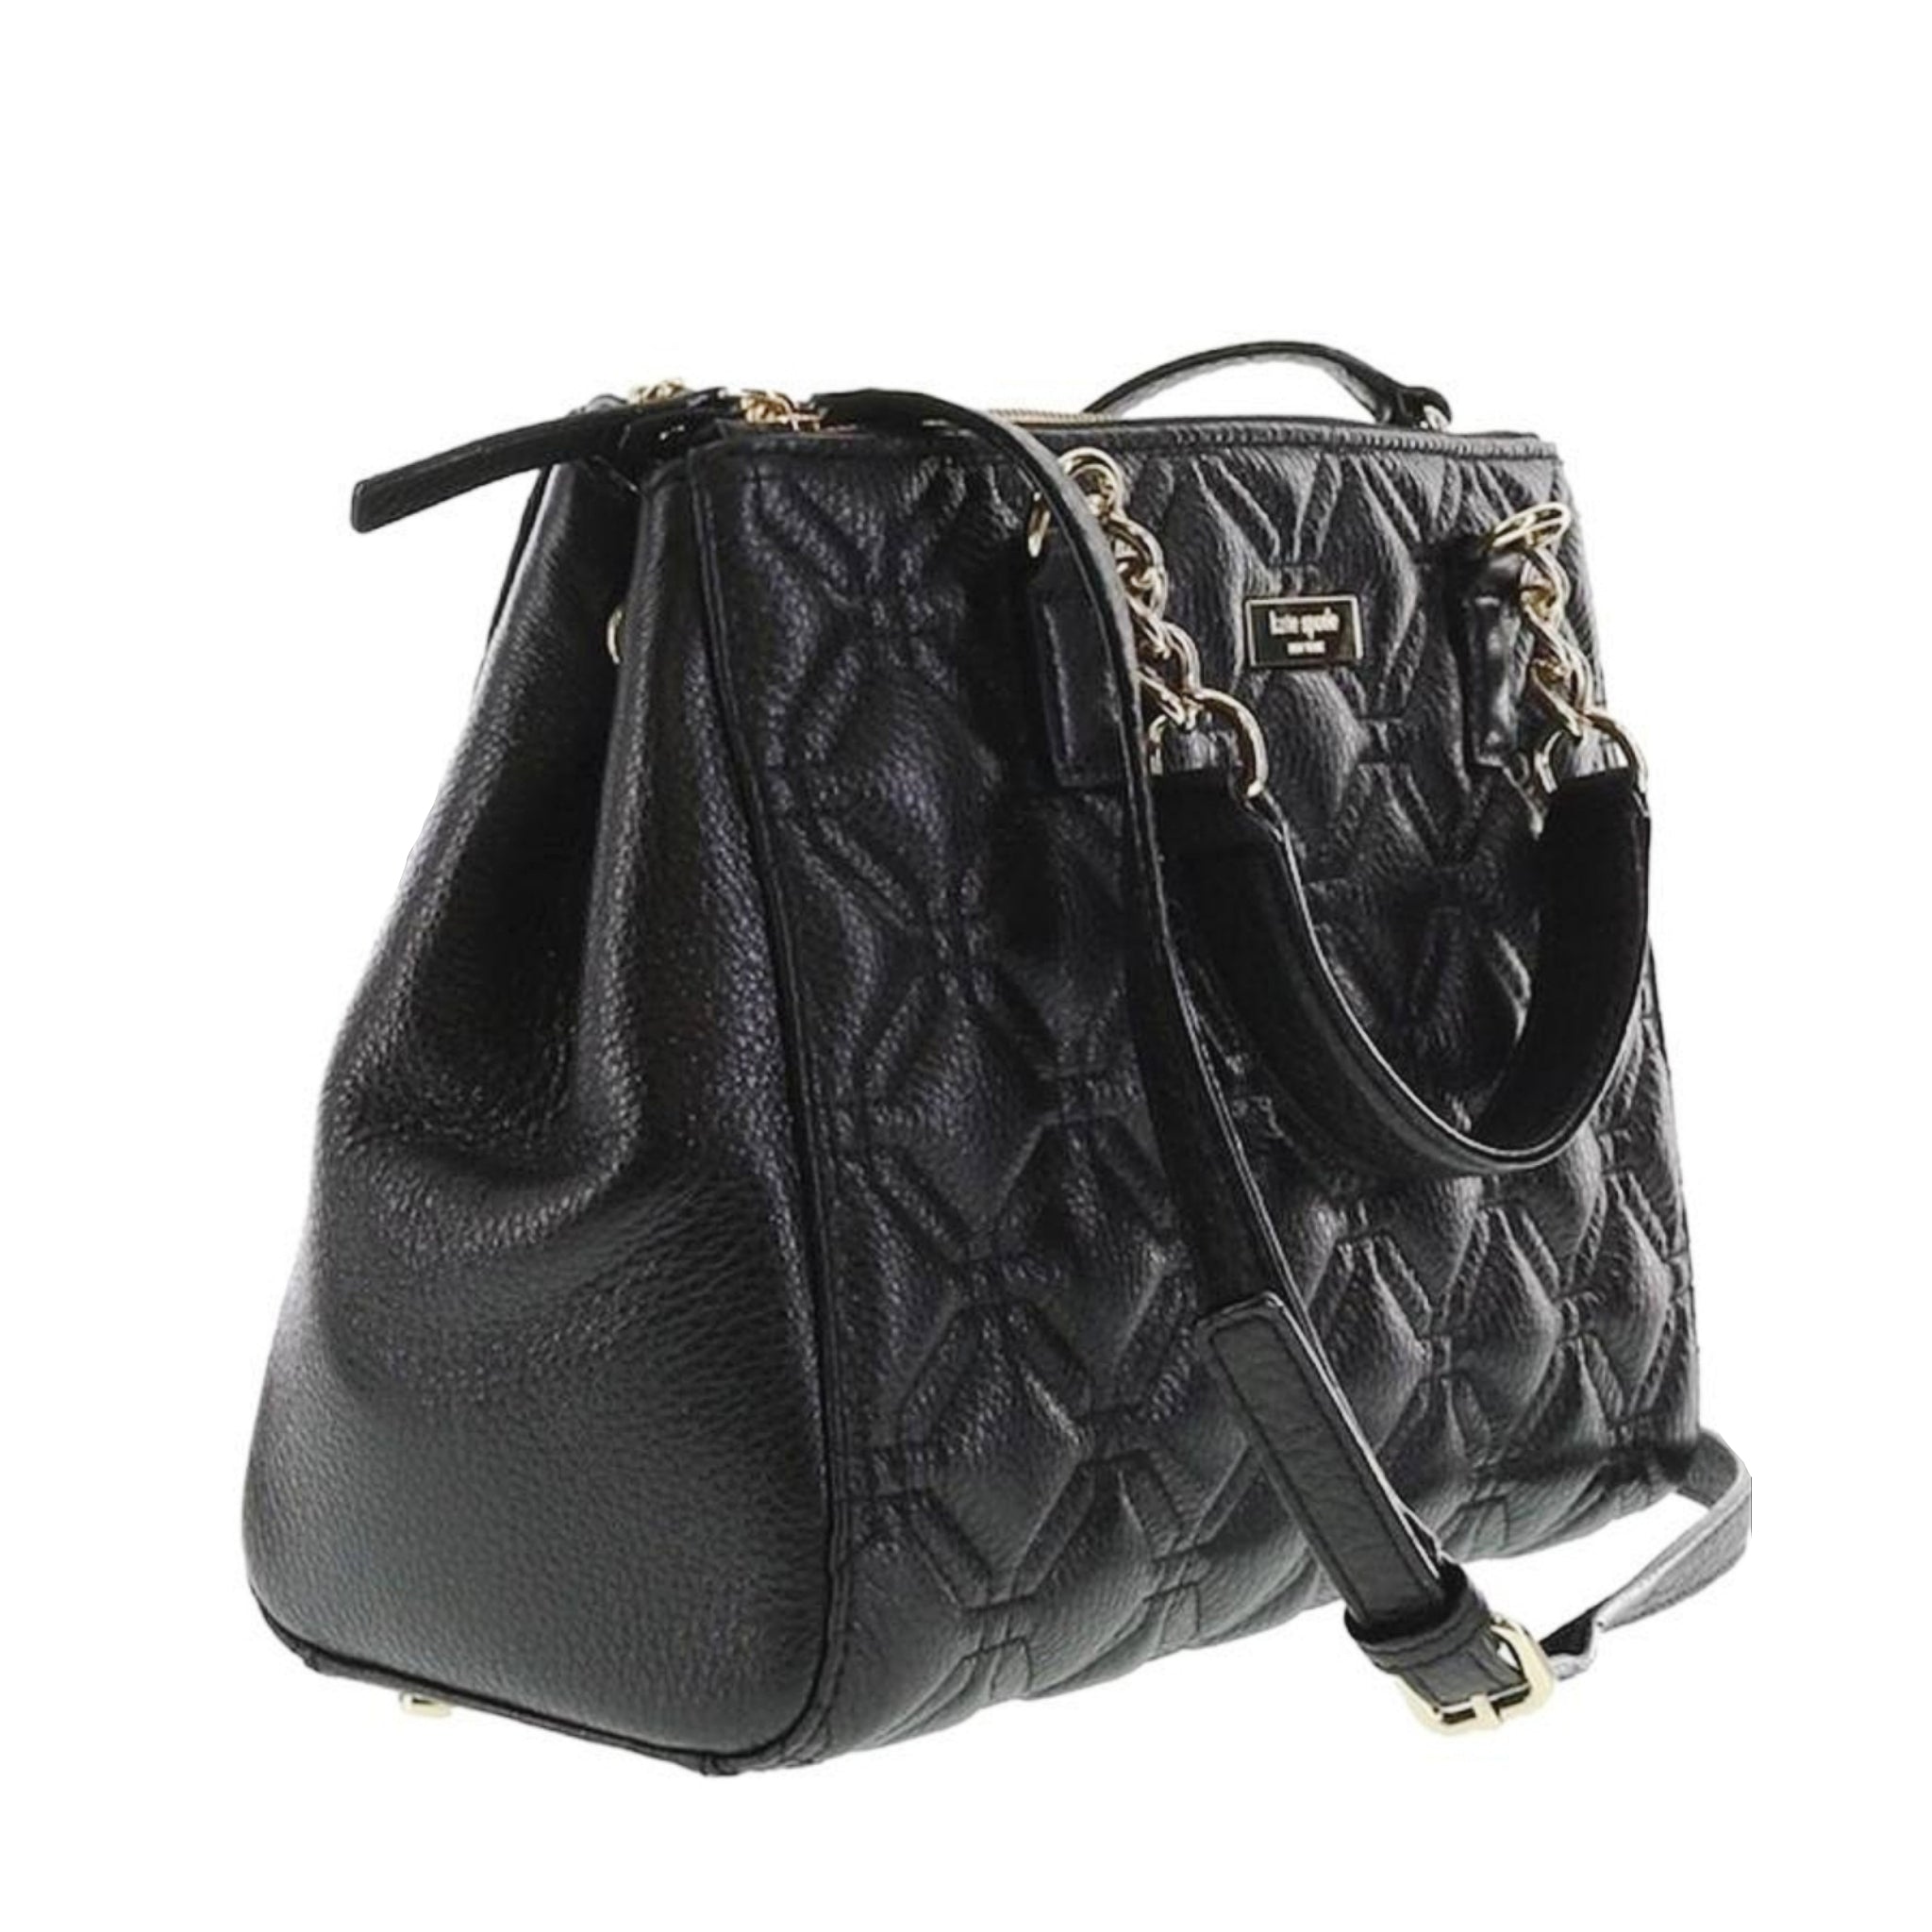 kate spade new york Gold Bags & Handbags for Women for sale | eBay